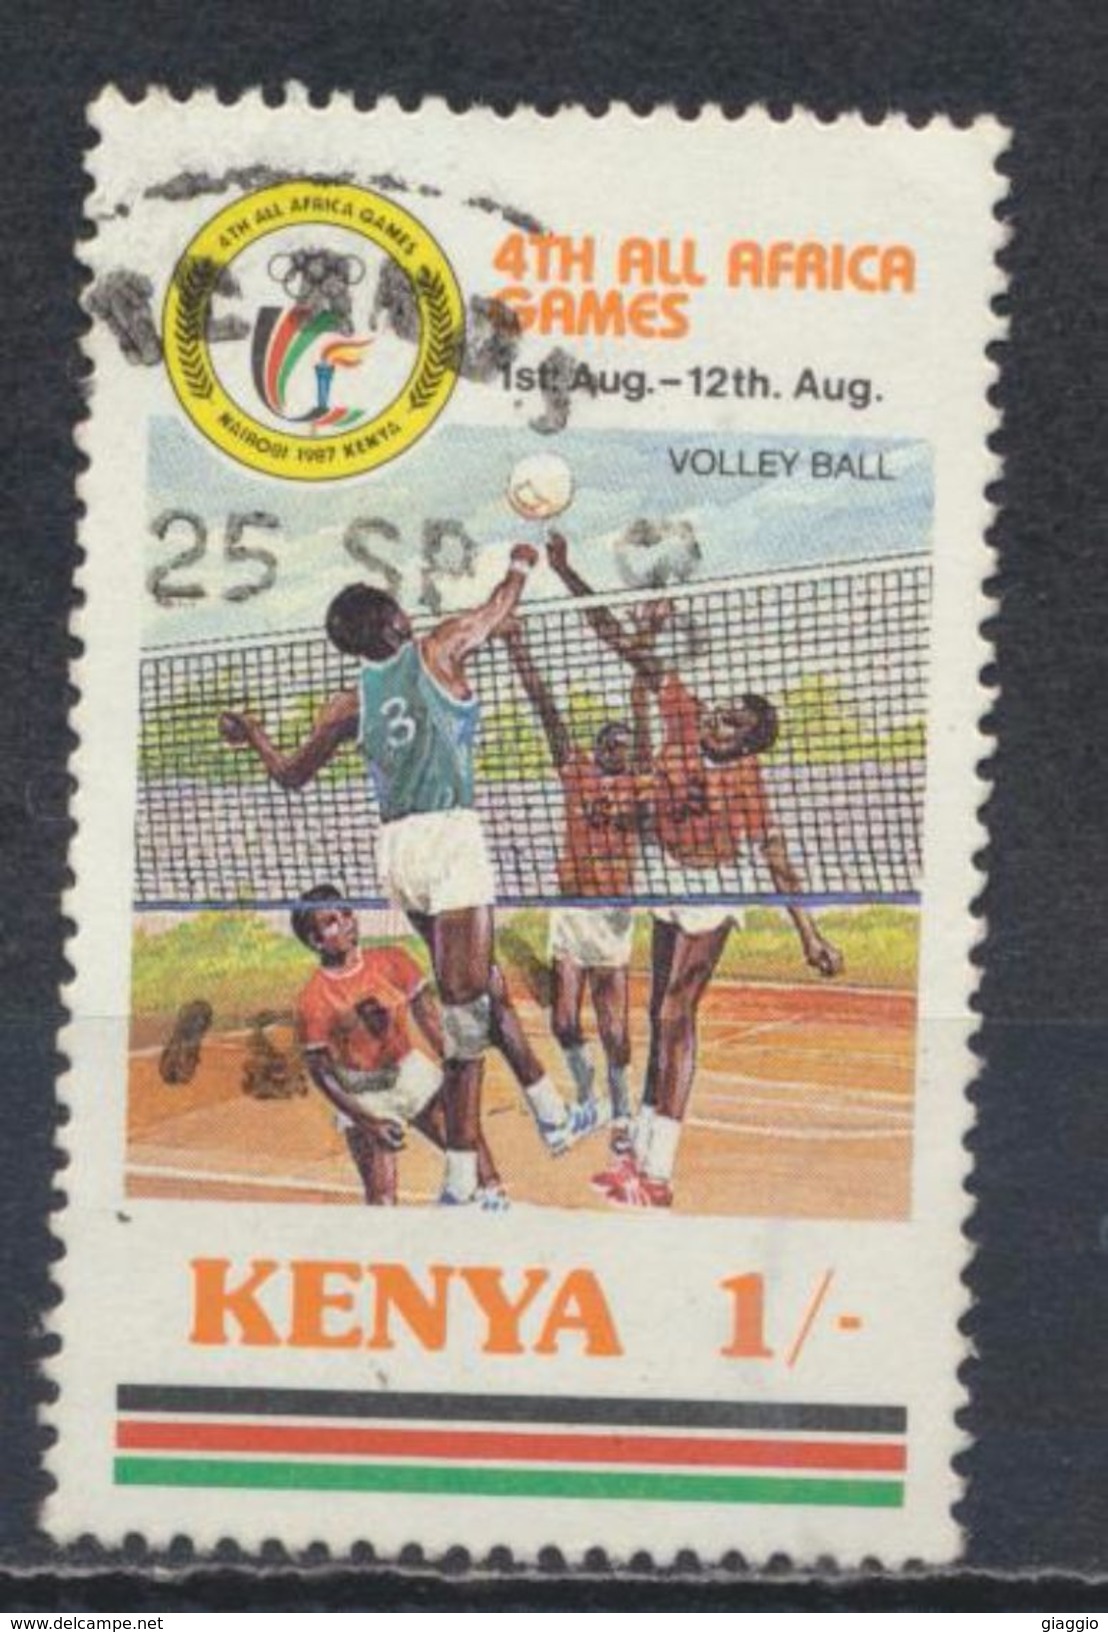 °°° KENYA - Y&T N°401 - 1987 °°° - Kenia (1963-...)